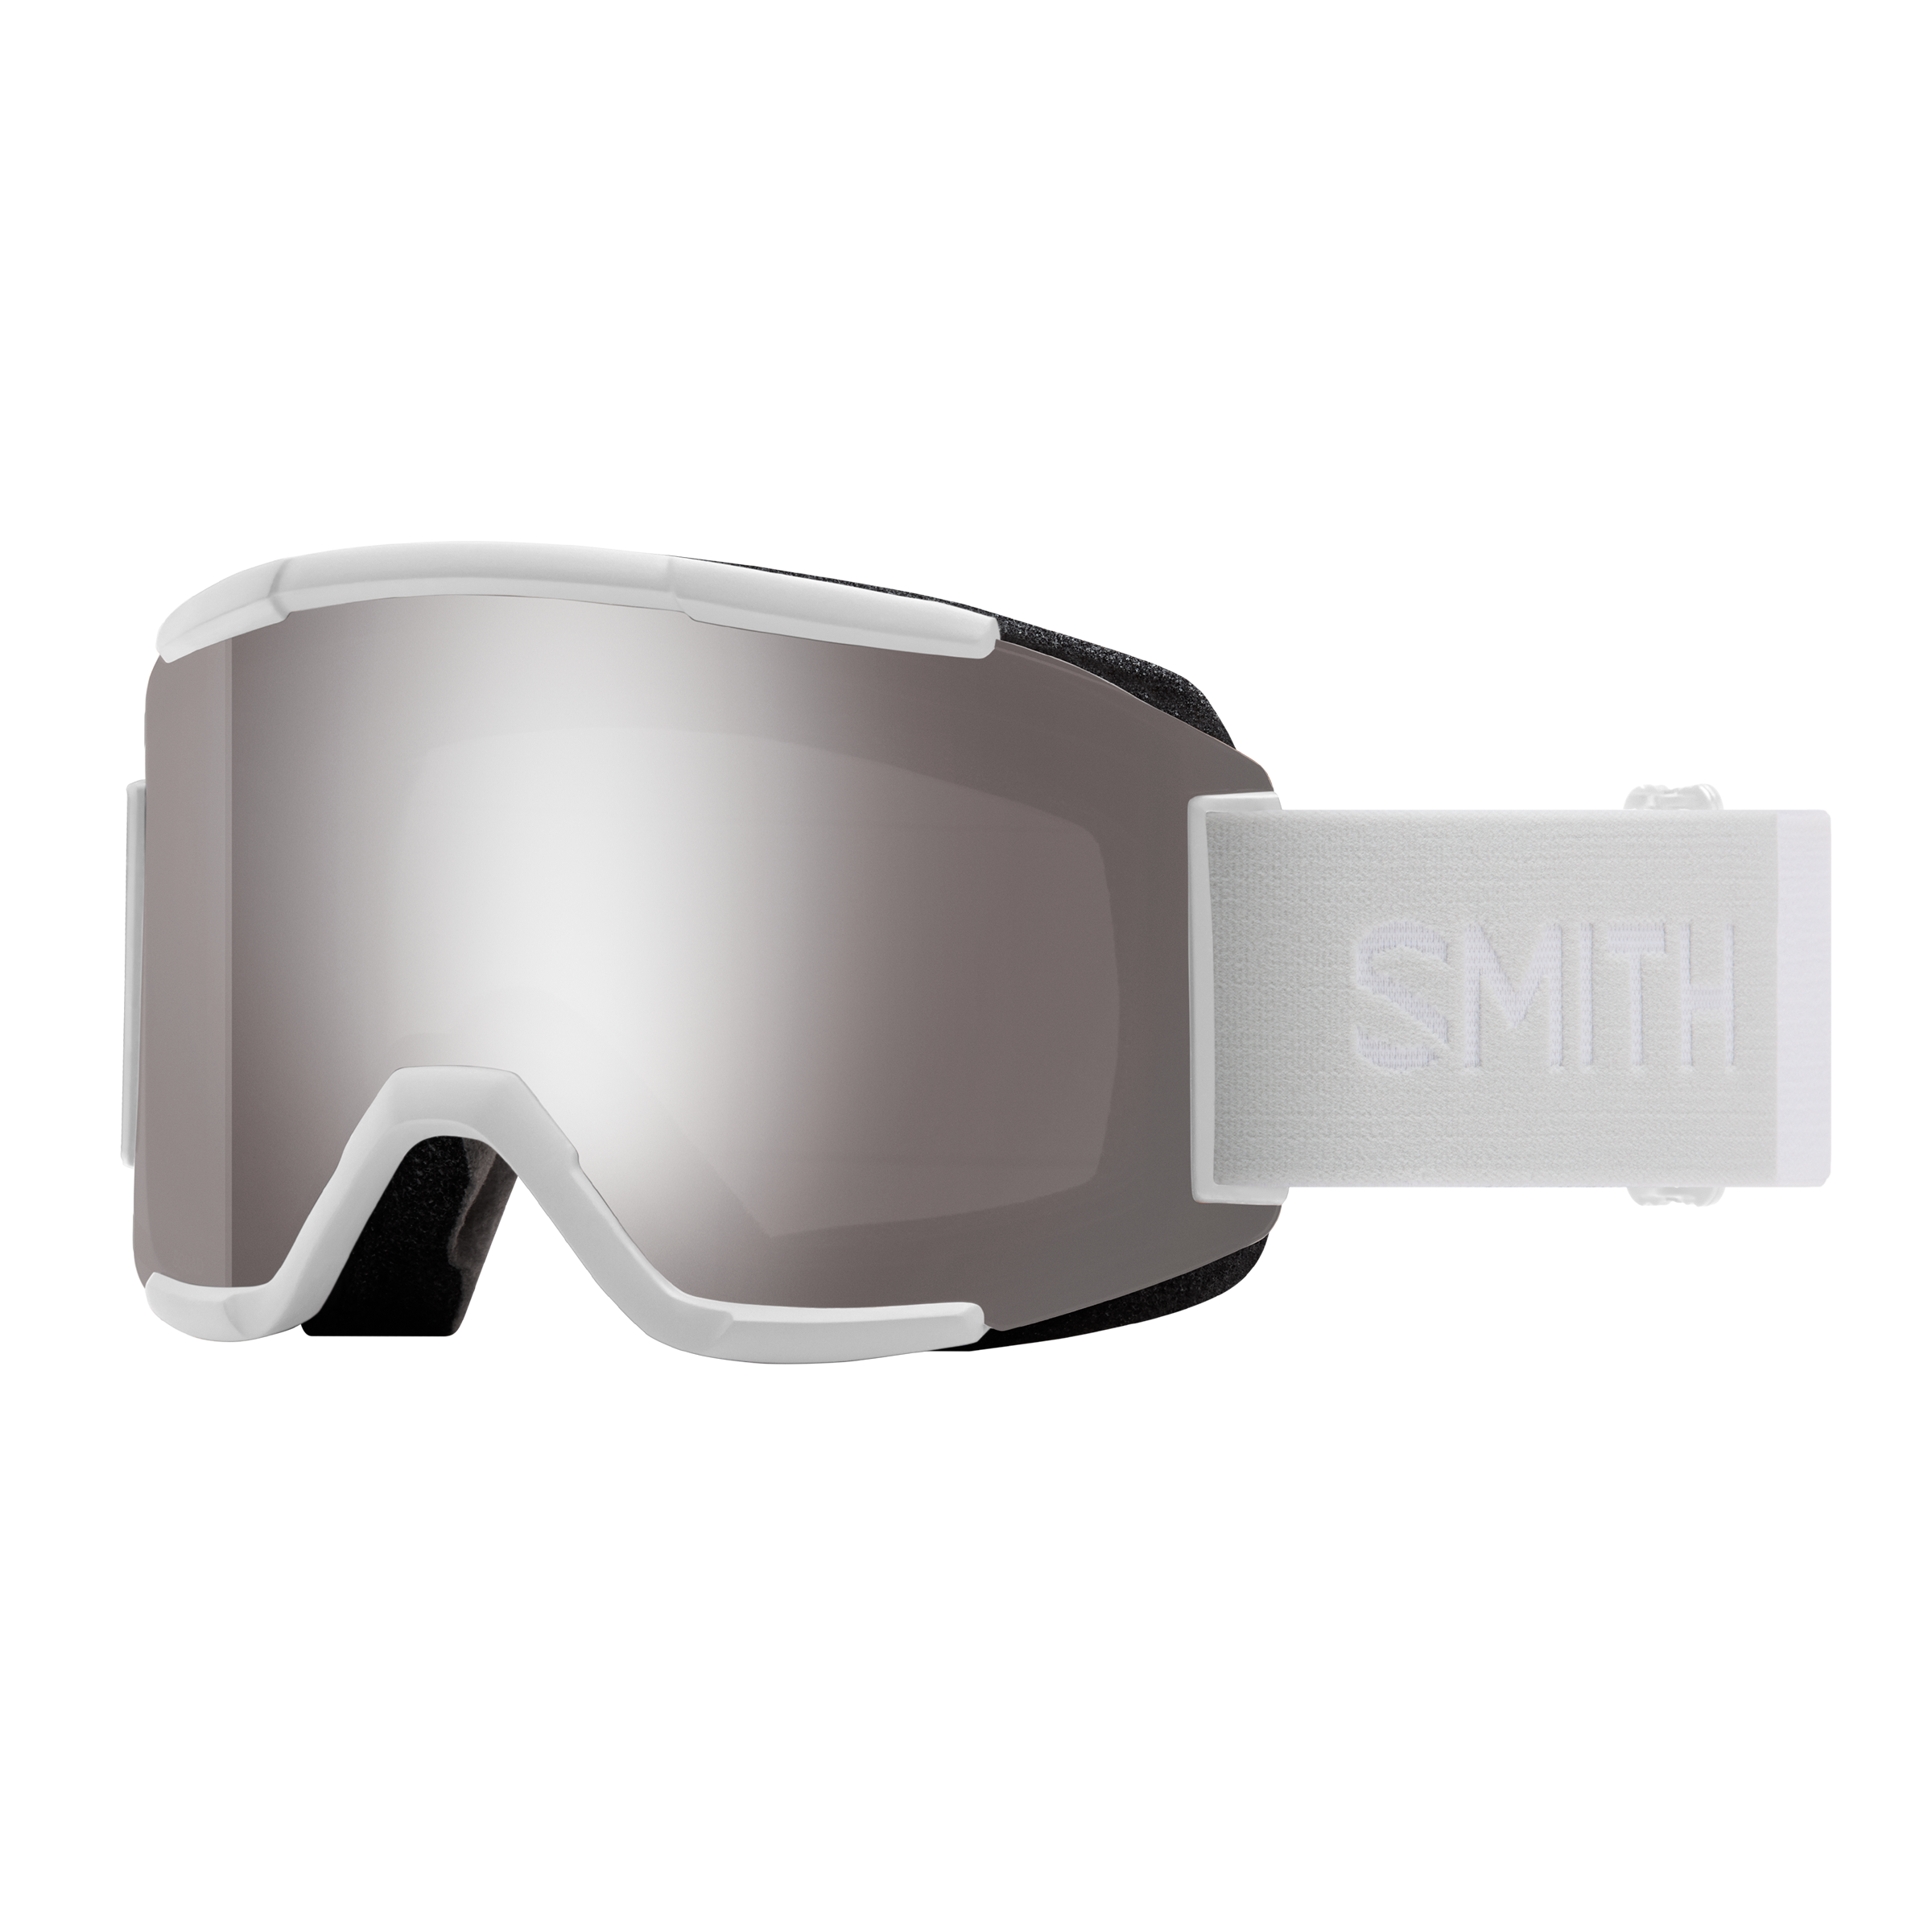 part # GOGCRRMX16 Smith Optics Ski Snow MX Goggle Carrier 